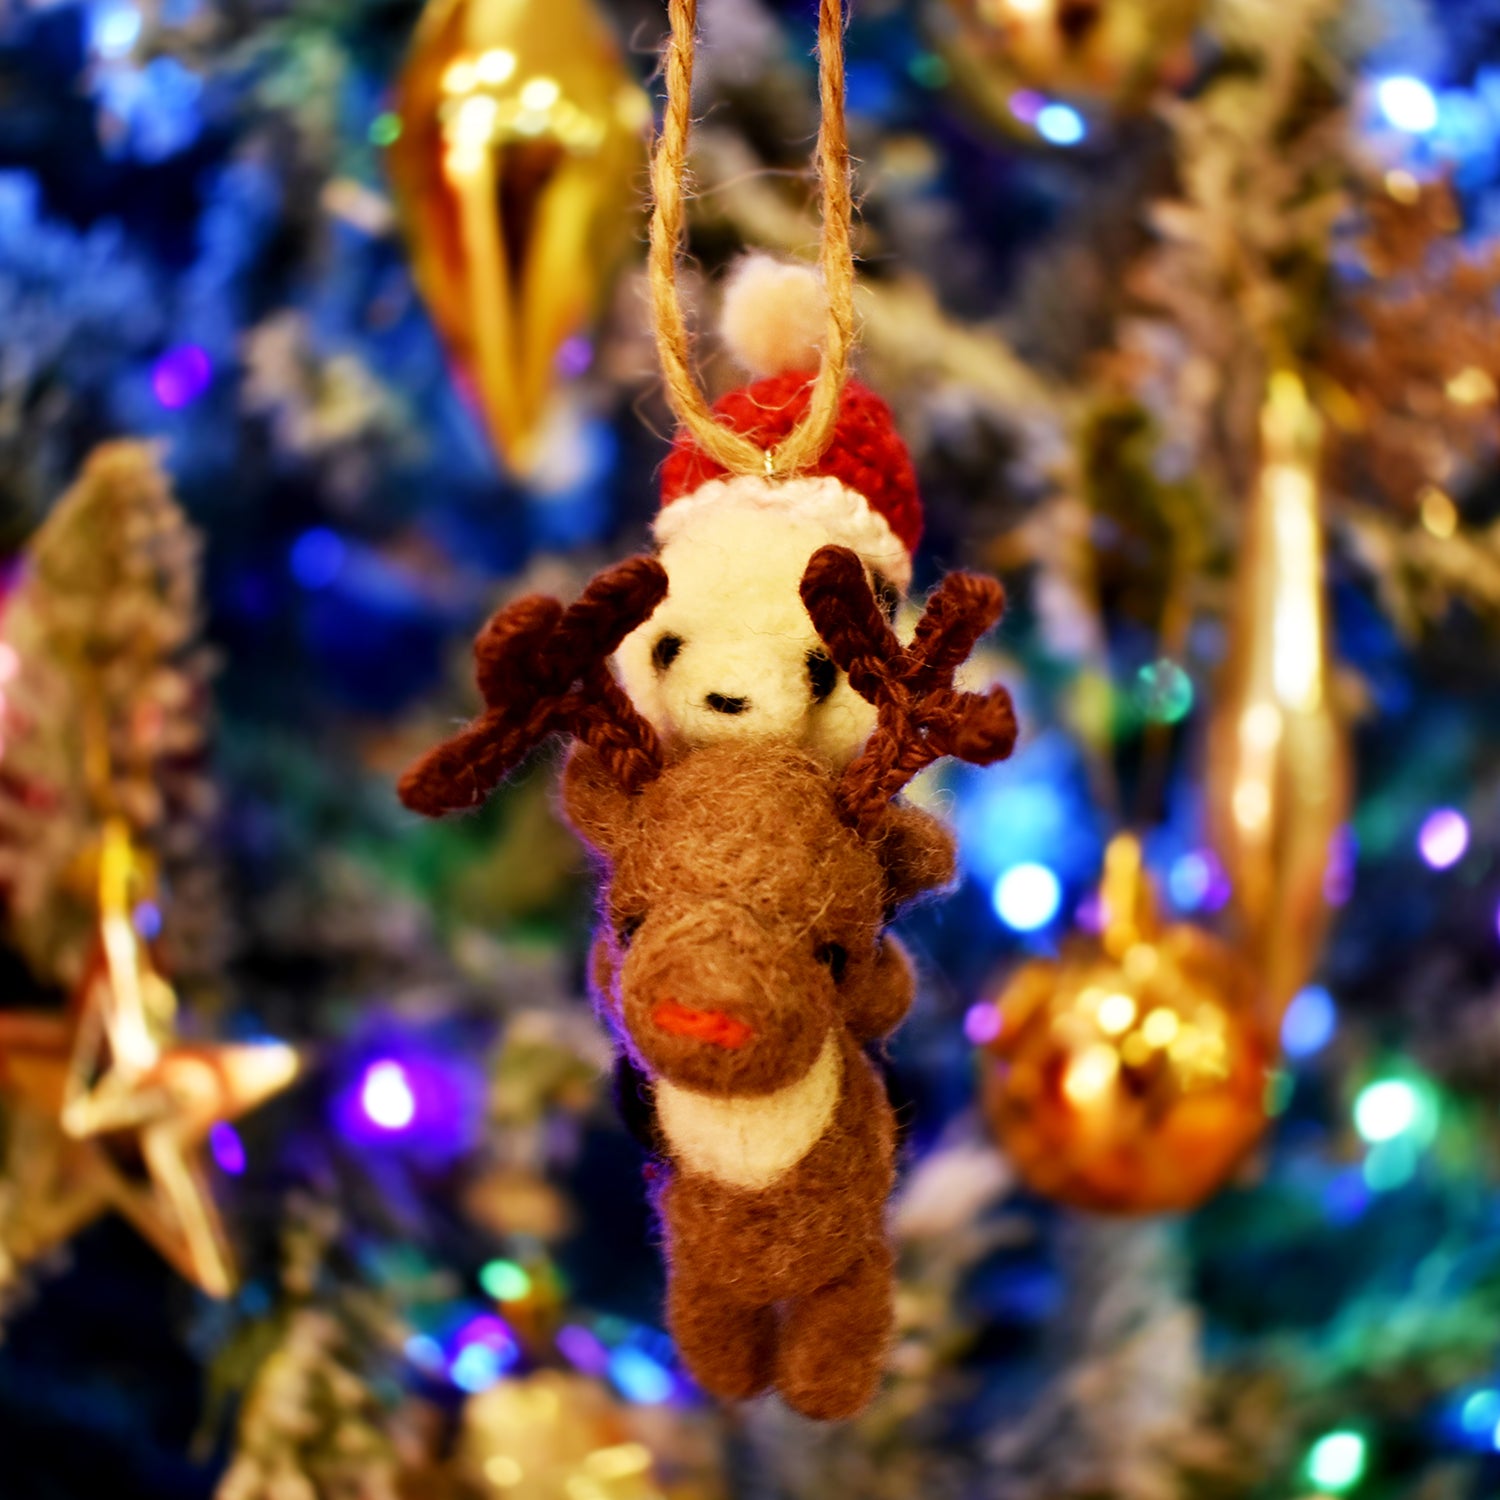 熊貓騎著馴鹿羊毛氈裝飾 -聖誕節限量版-